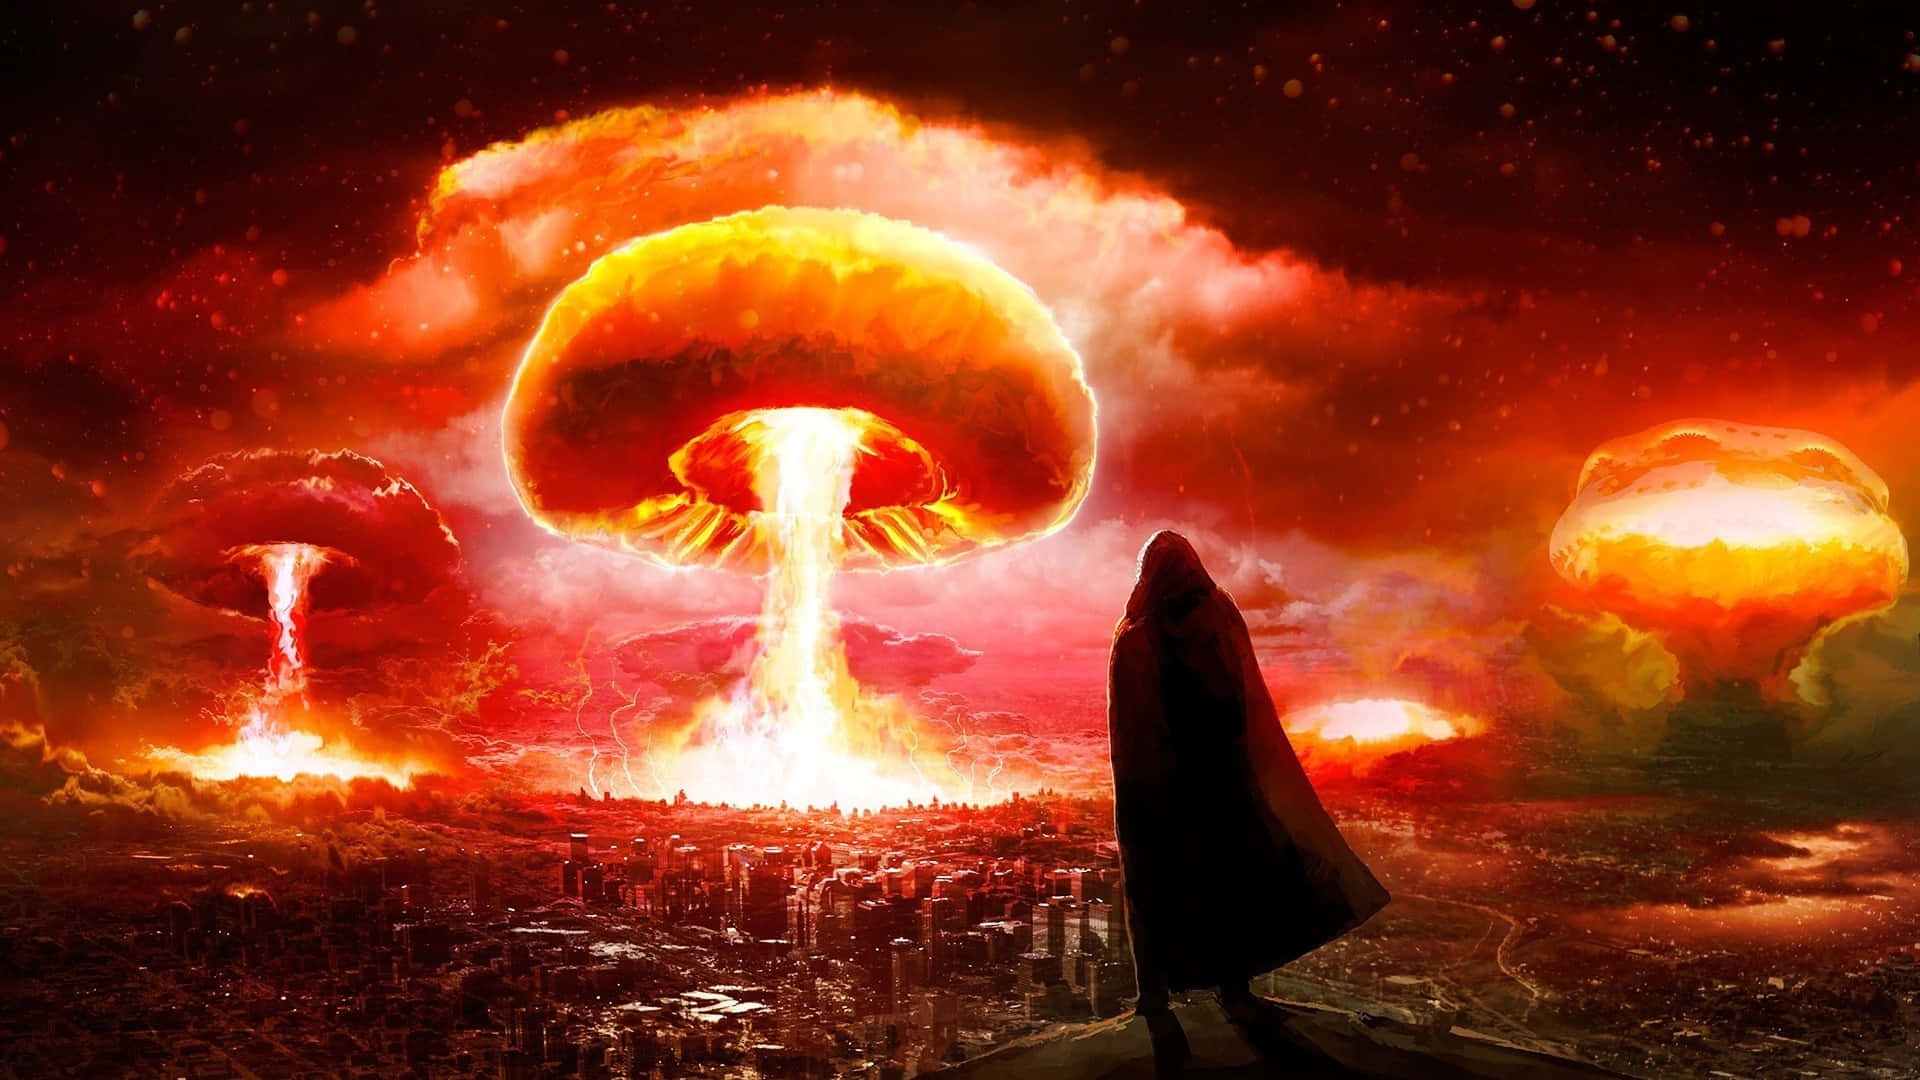 Explosióncataclísmica En El Mundo De Fallout. Fondo de pantalla